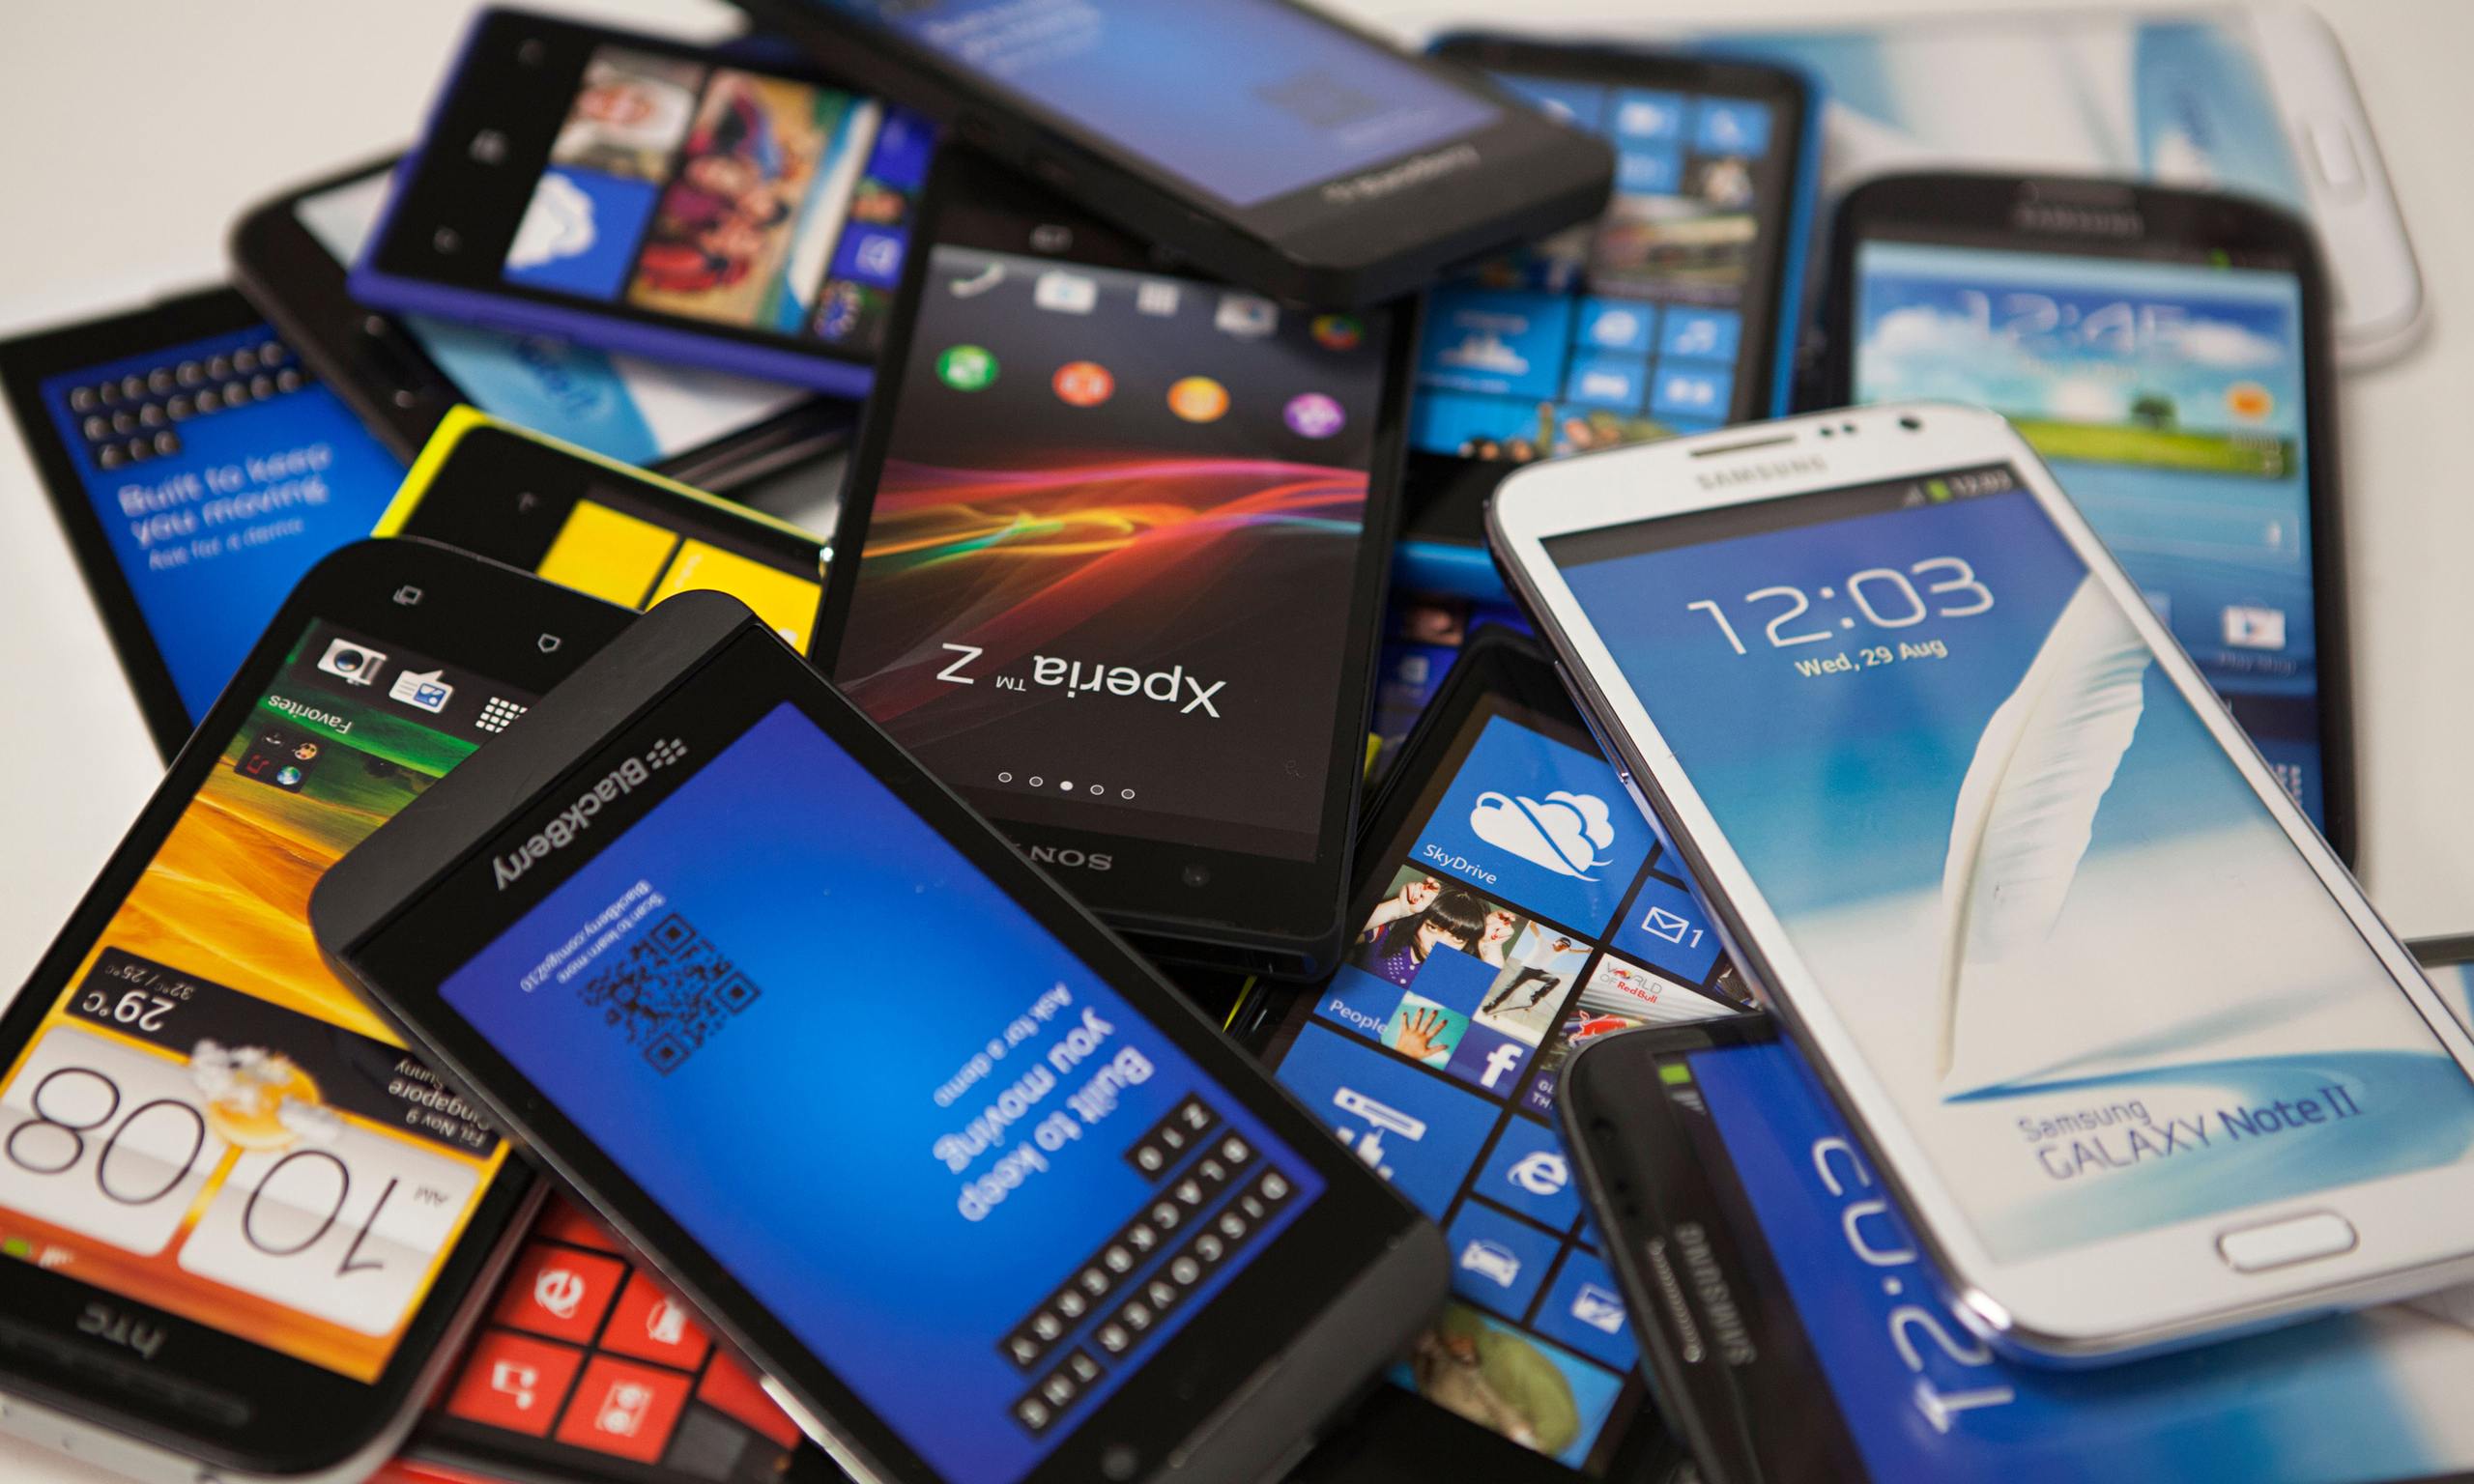 Tens estes aplicativos instalados no telemóvel? Não devias! Estão a prejudicar o teu smartphone!